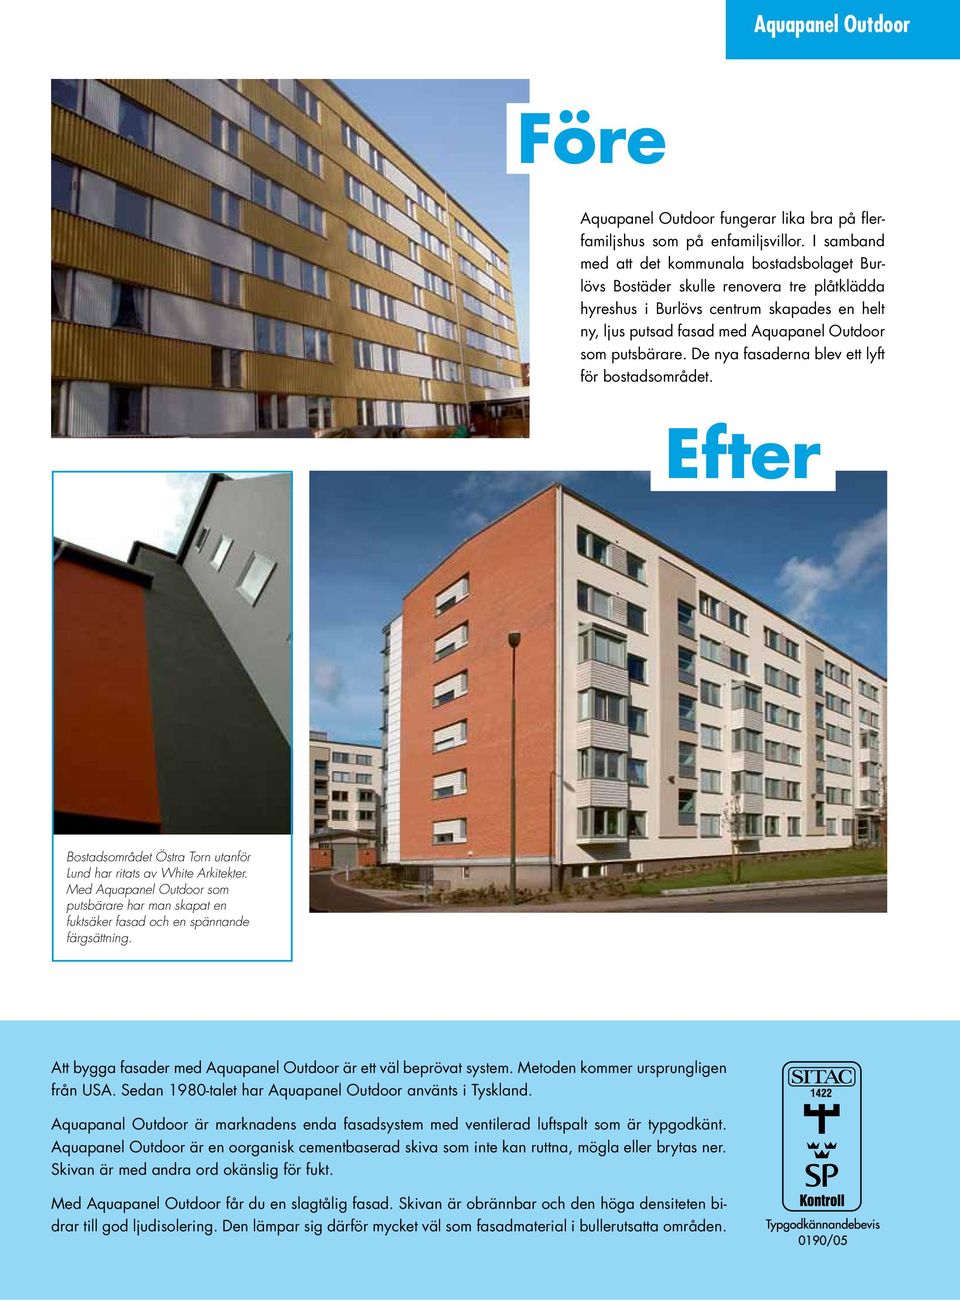 De nya fasaderna blev ett lyft för bostadsområdet. Efter Bostadsområdet Östra Torn utanför Lund har ritats av White Arkitekter.